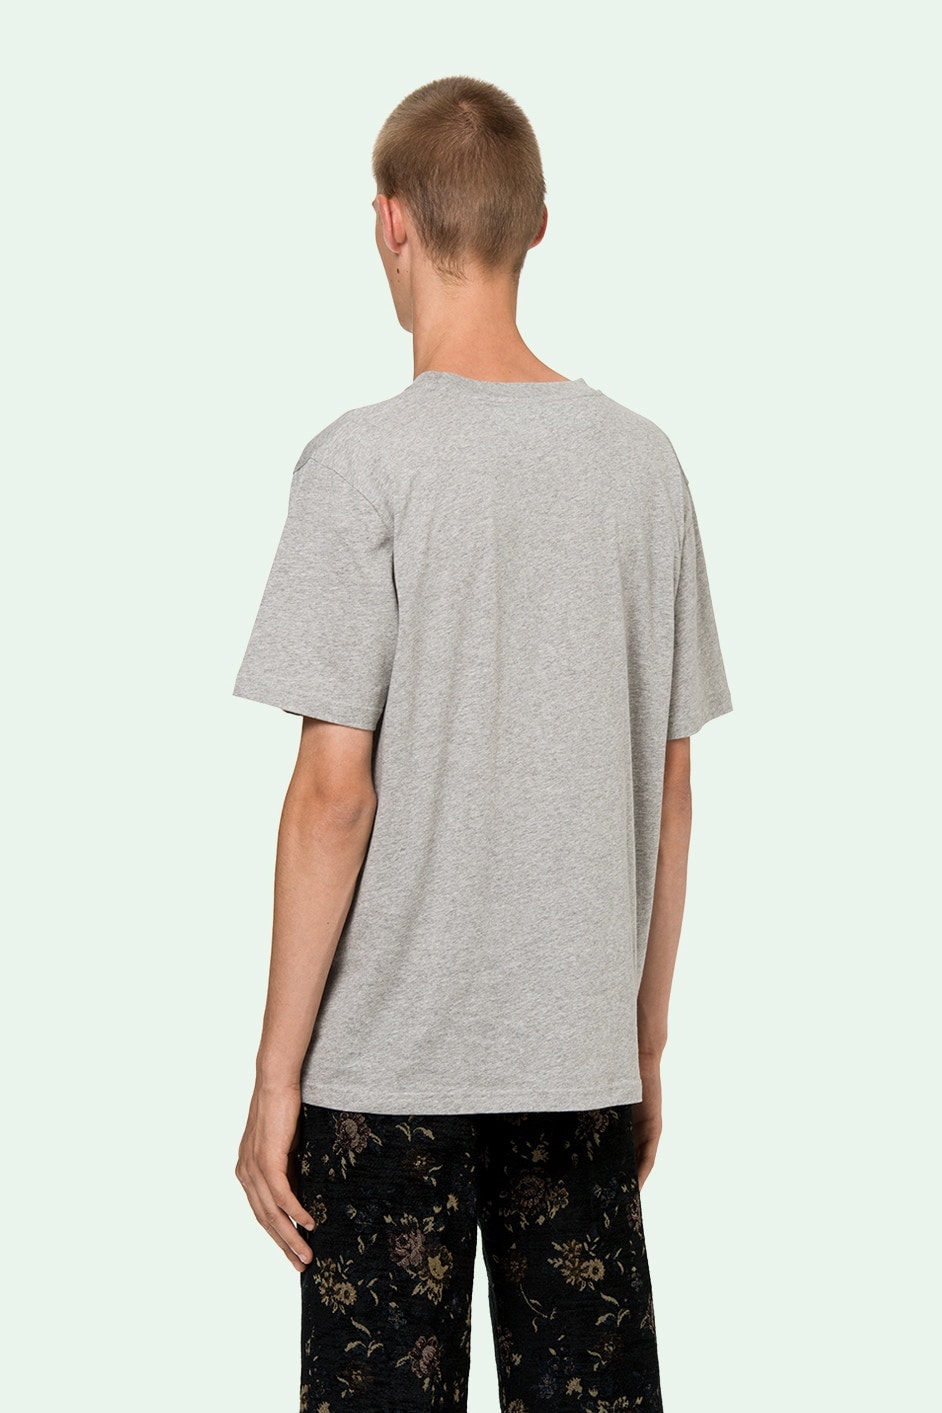 Off-White™ 推出售價約 $500 美元的打底 T-Shirt 套裝